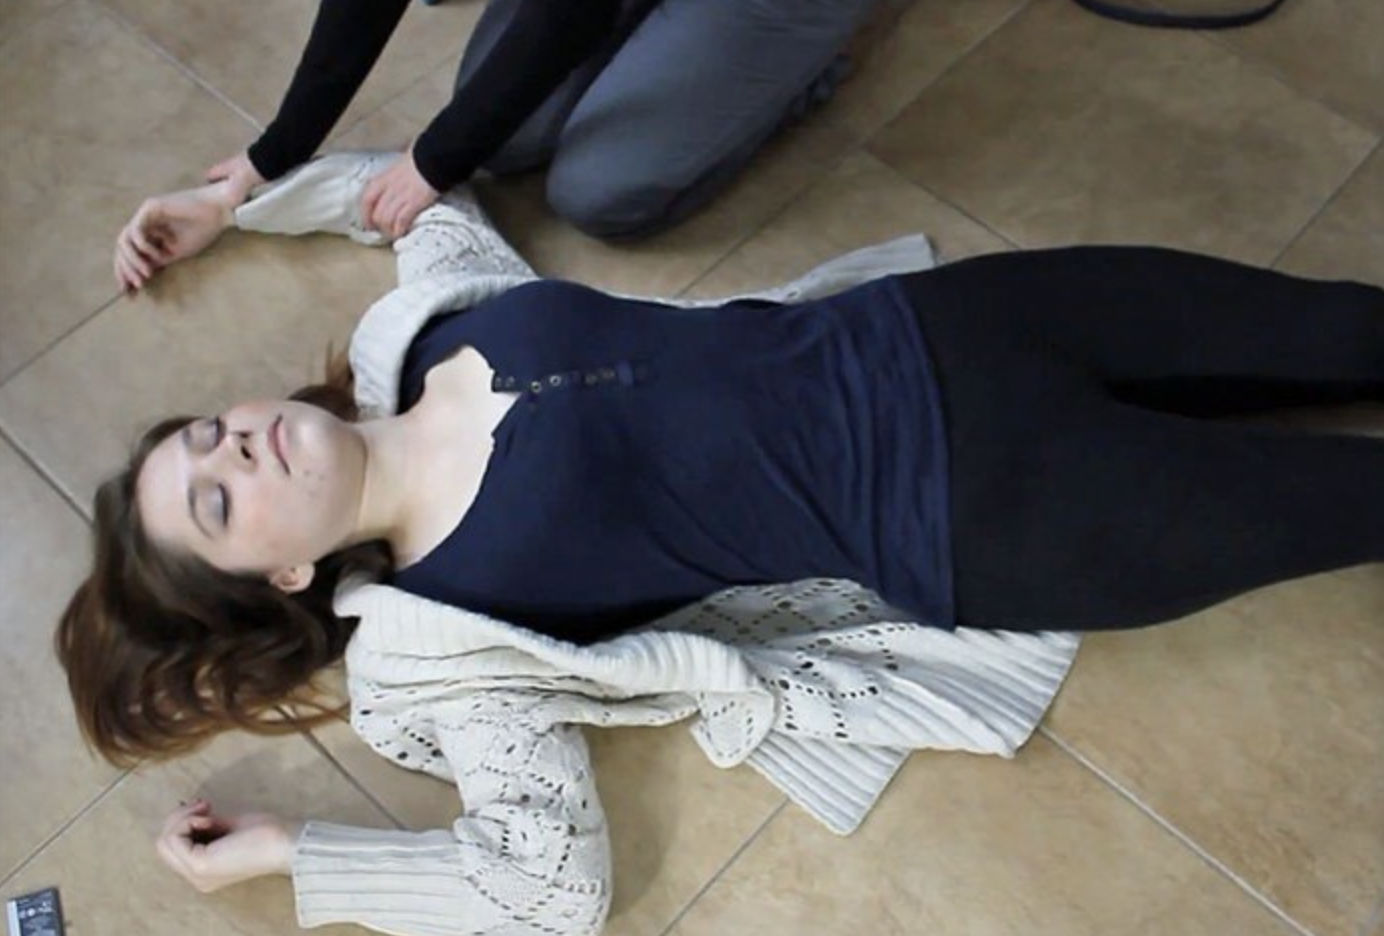 Mujer inconsciente tendida en el suelo | Fuente: Shutterstock